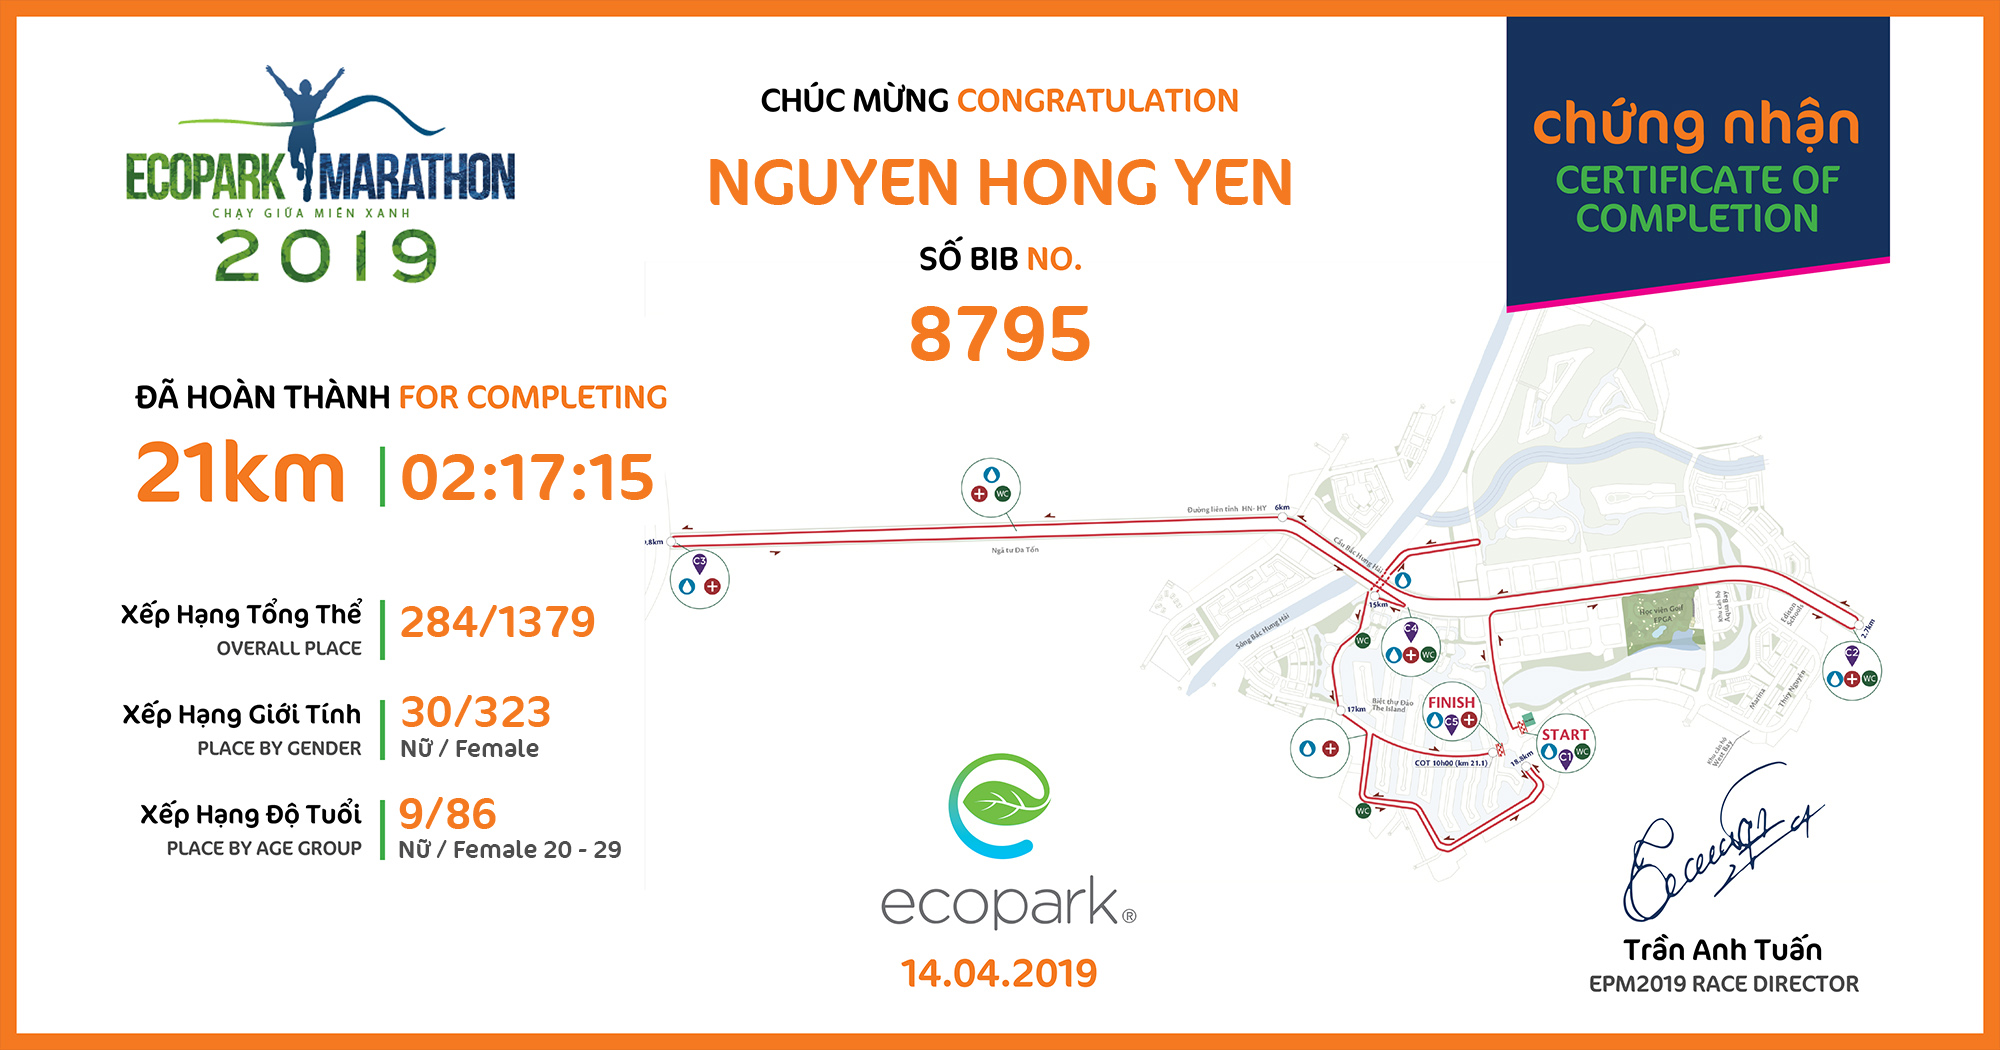 8795 - Nguyen Hong Yen